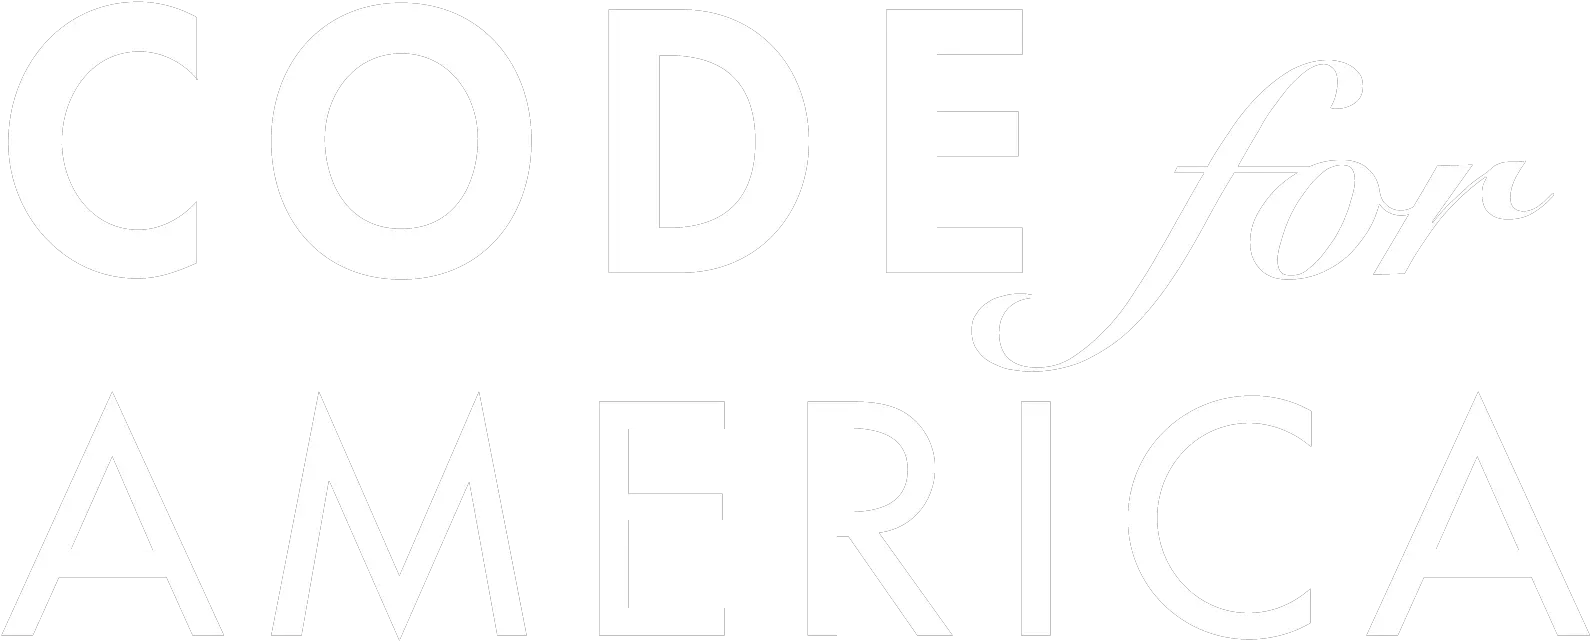 Talent Initiative Code For America Png America Got Talent Logo